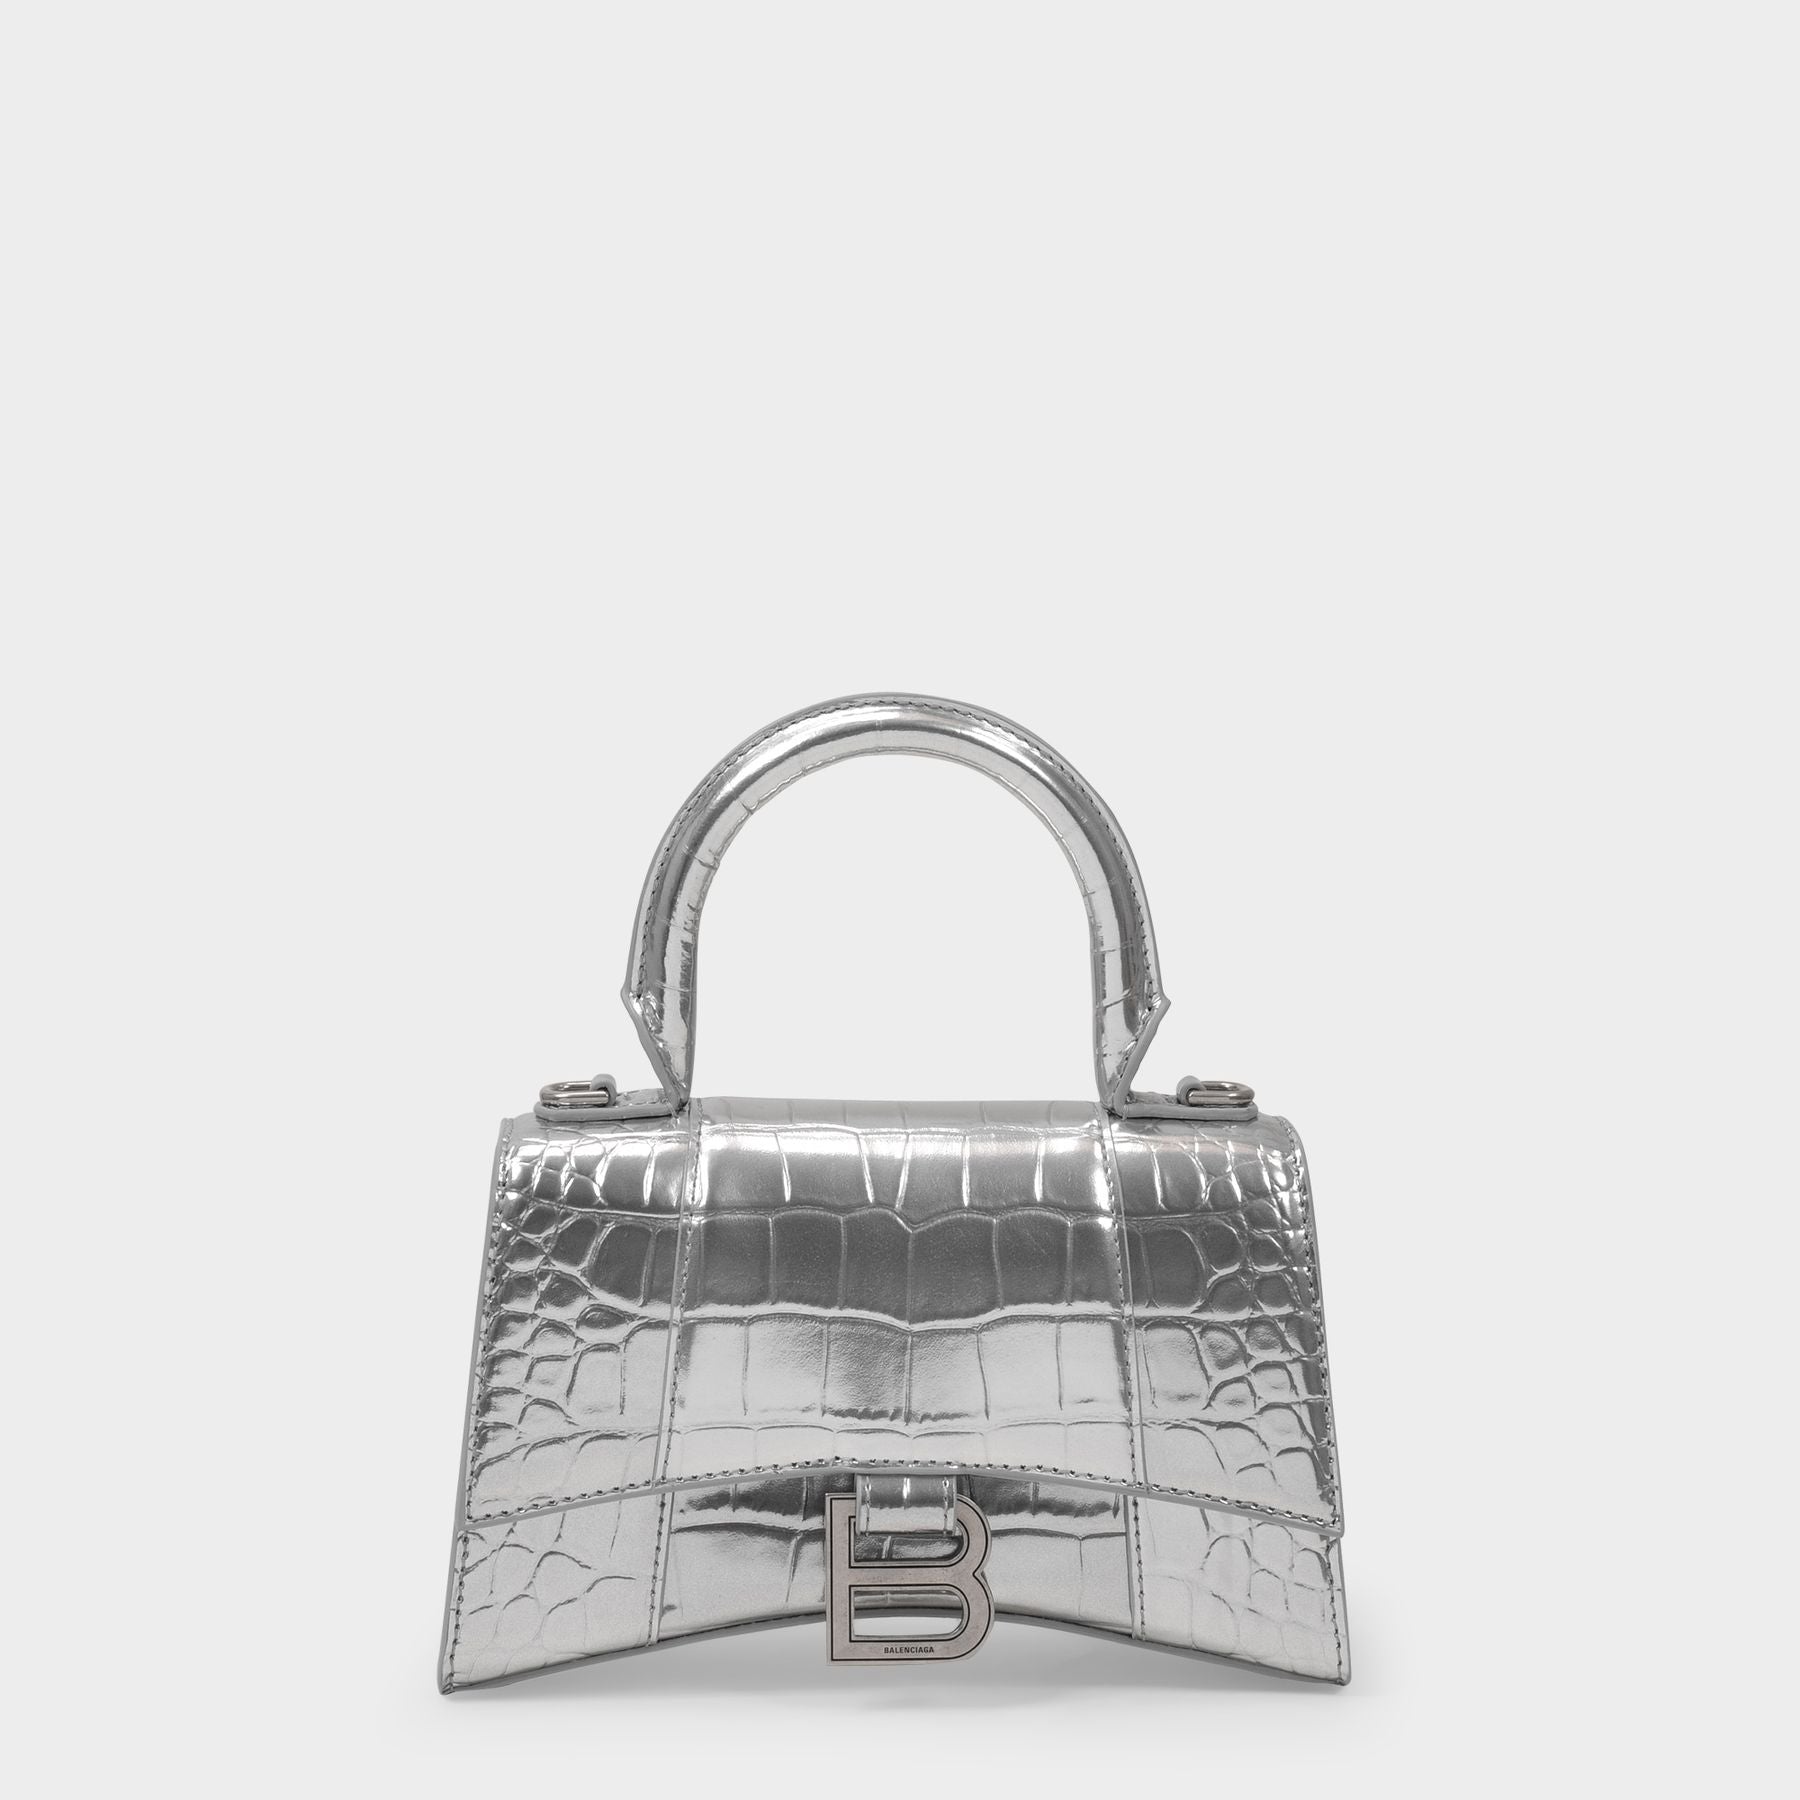 Luxury clutch bag - Balenciaga clutch bag in silver crocodile